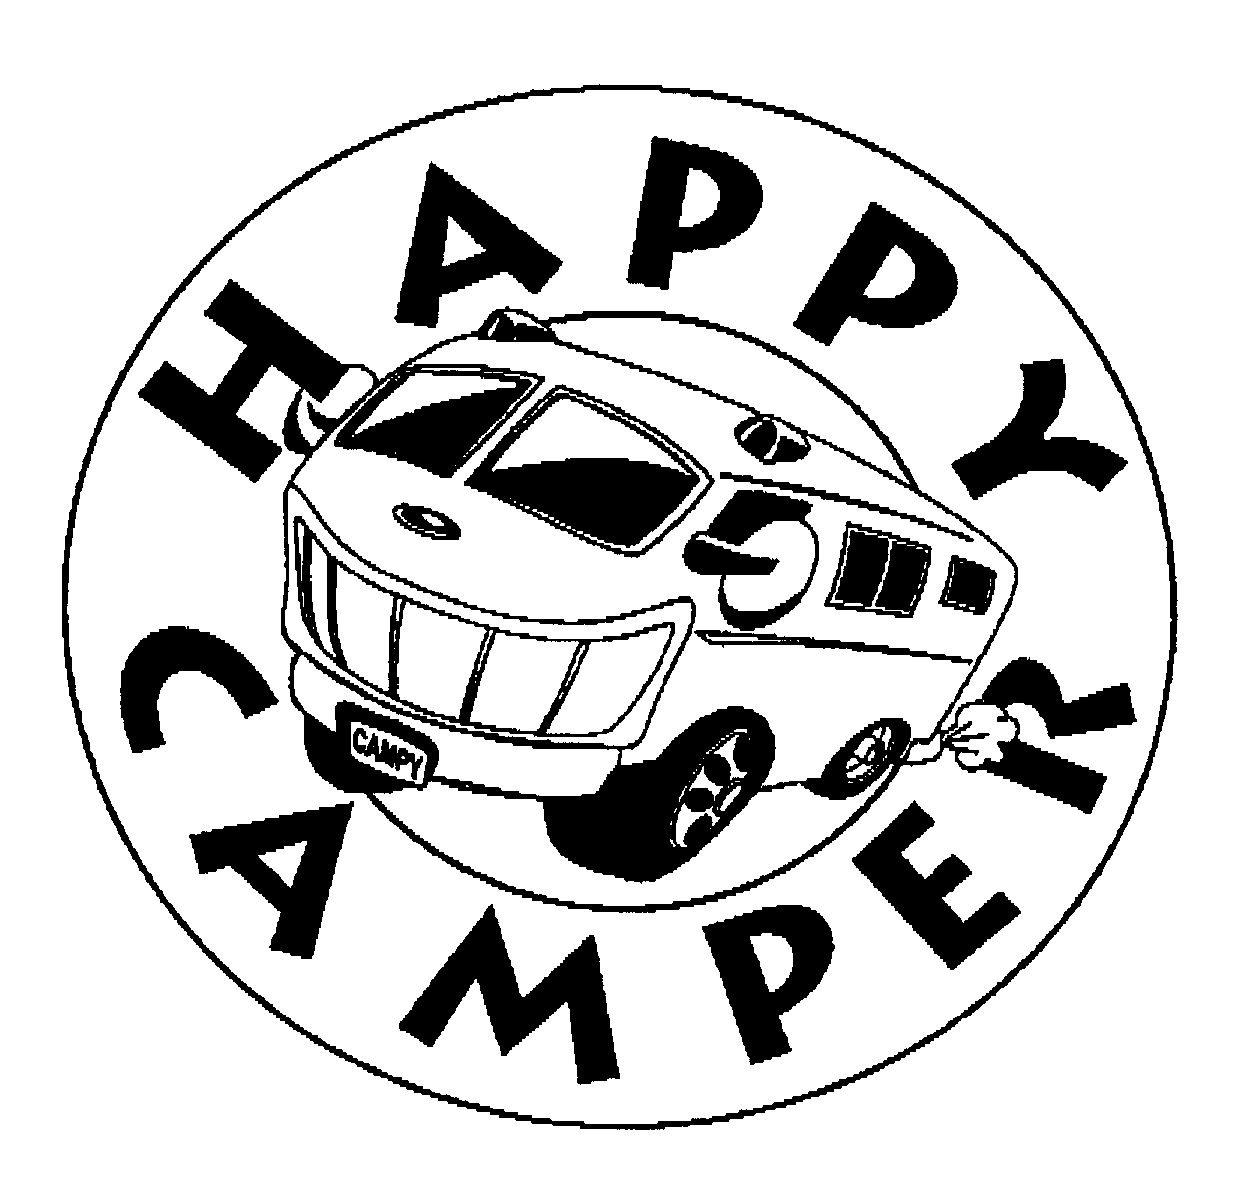 Trademark Logo HAPPY CAMPER